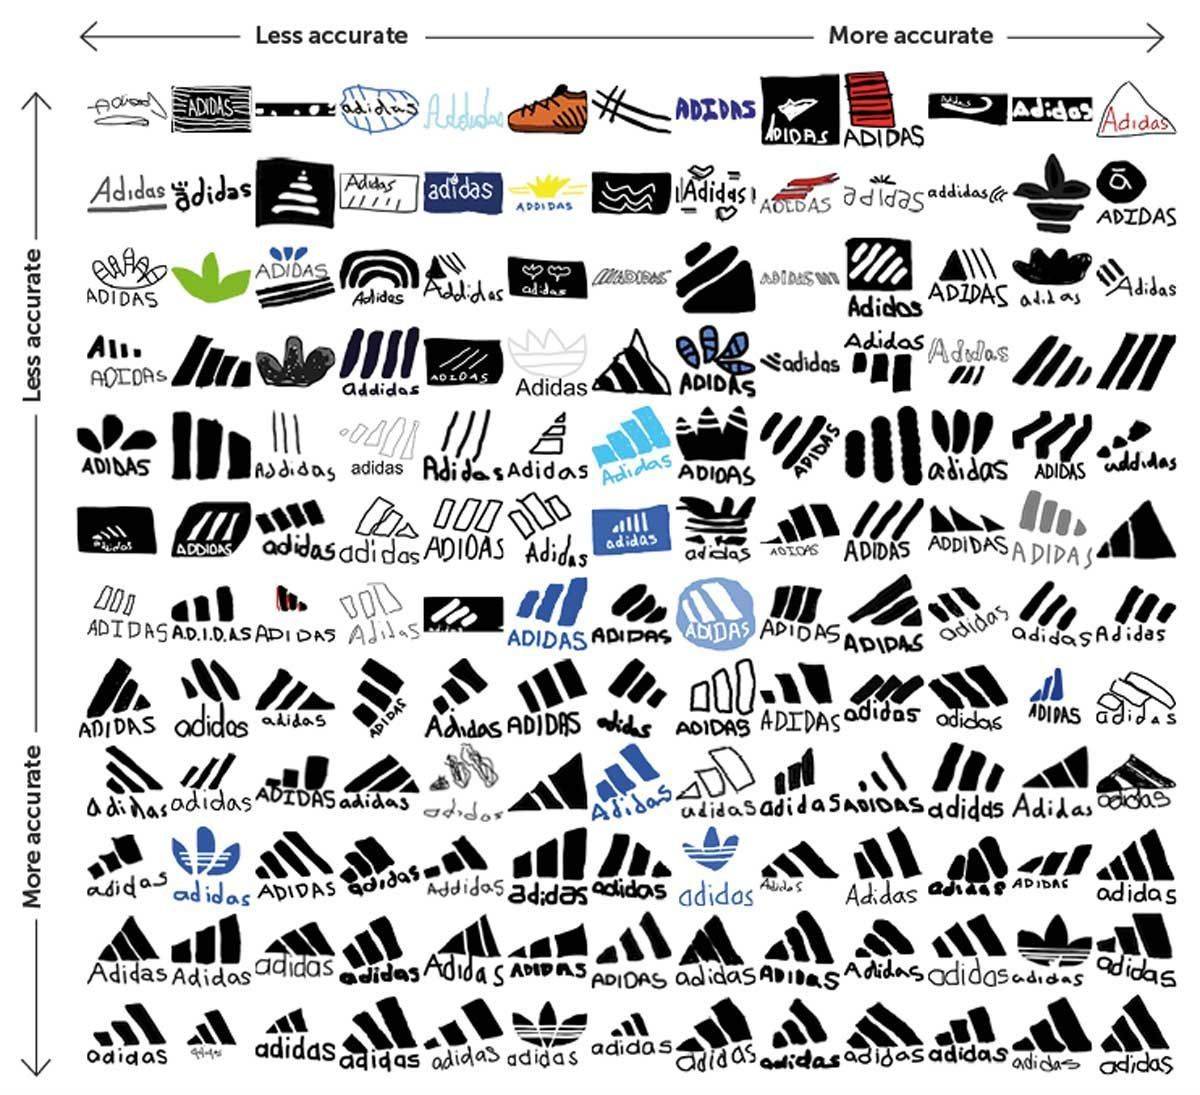 Adidas kam auf 12 Prozent "nahezu perfekte" Zeichnungen des Logos.